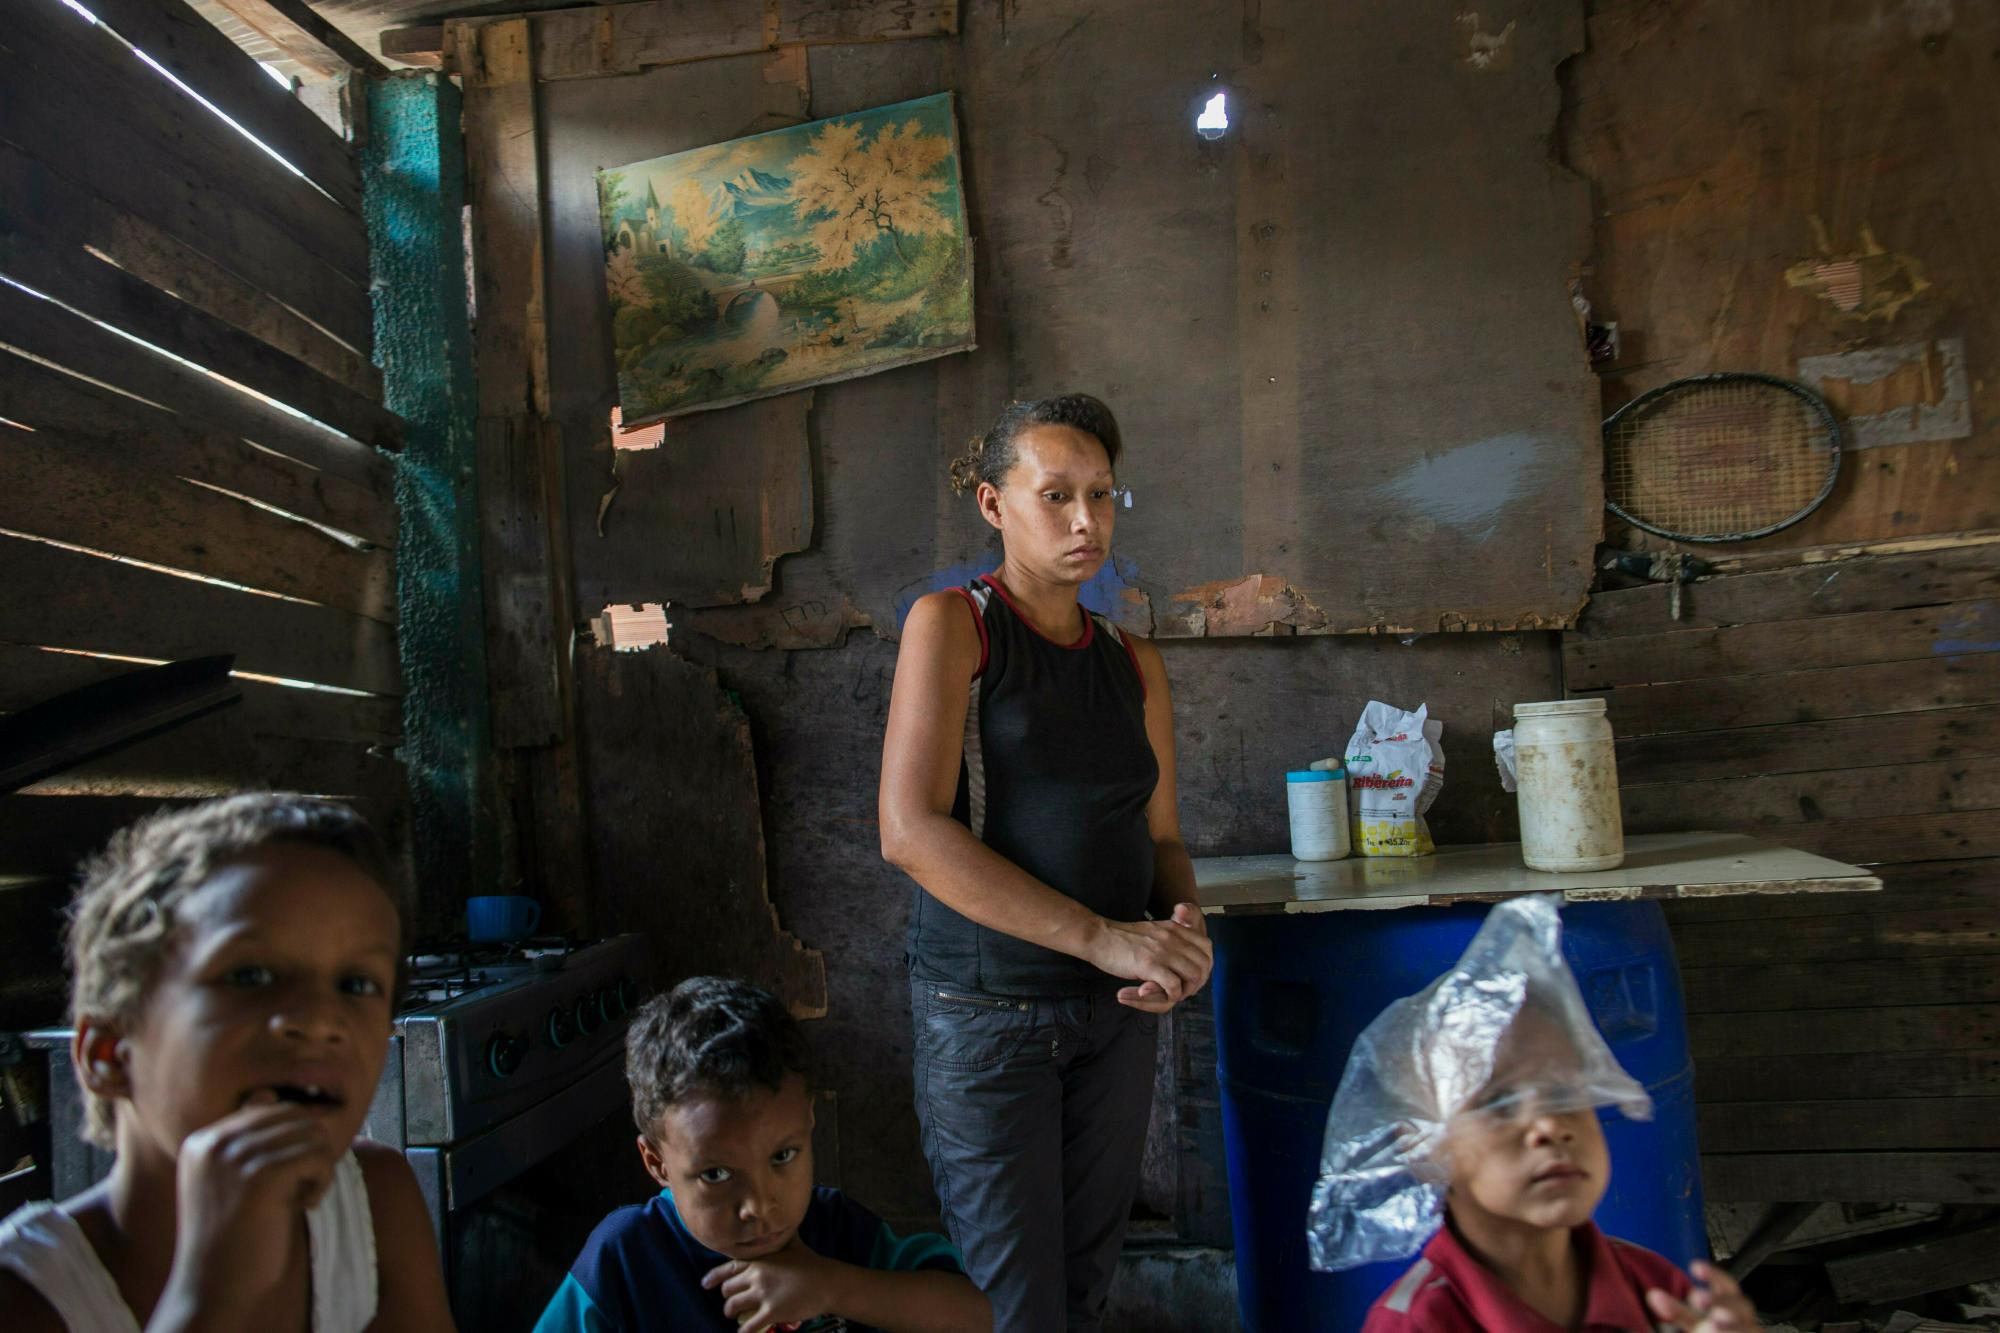 En esta foto del 14 de febrero de 2019, Francis se para en la sala de estar con sus hijos Moises, de 8 años, desde la izquierda, Joyker, de 5 años, y Eduardo, de 4, en el barrio de Petare, en Caracas, Venezuela. La mayoría de los venezolanos culpan a Nicolás Maduro por la crisis económica.